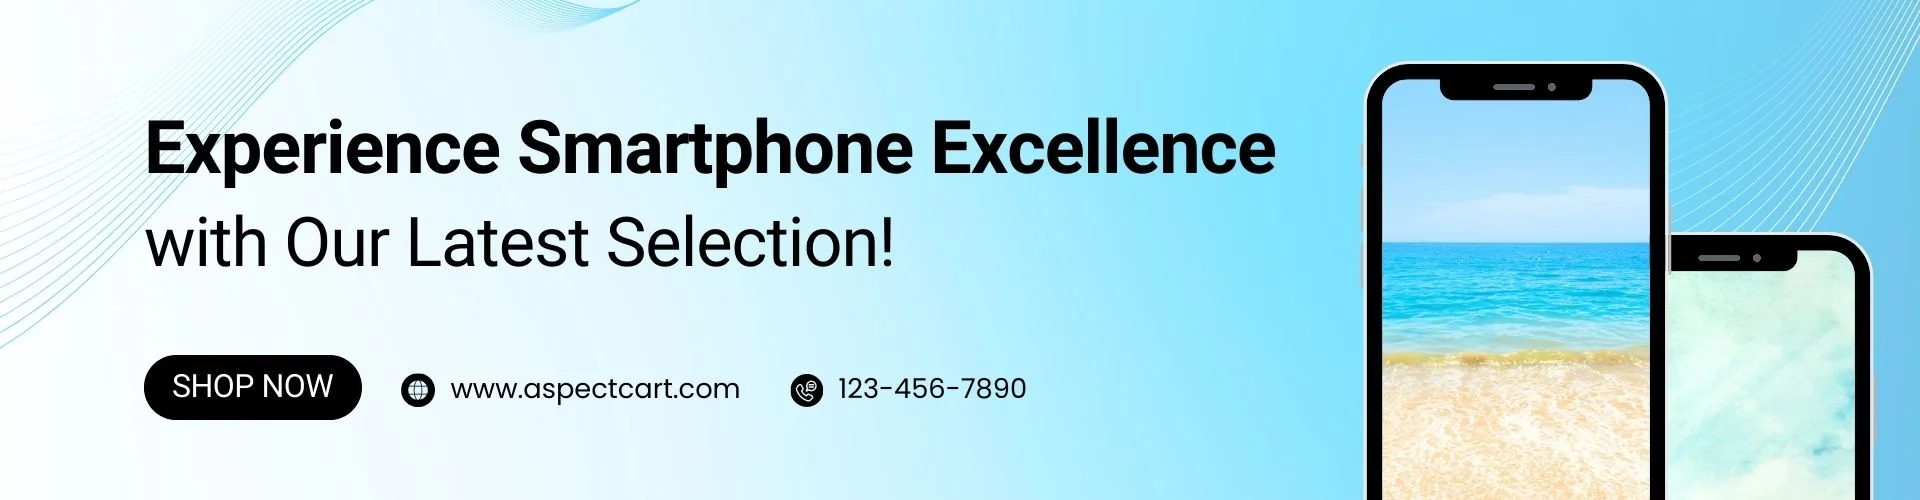 モバイル電話電子機器店での最新のスマートフォンコレクションを紹介するバナー